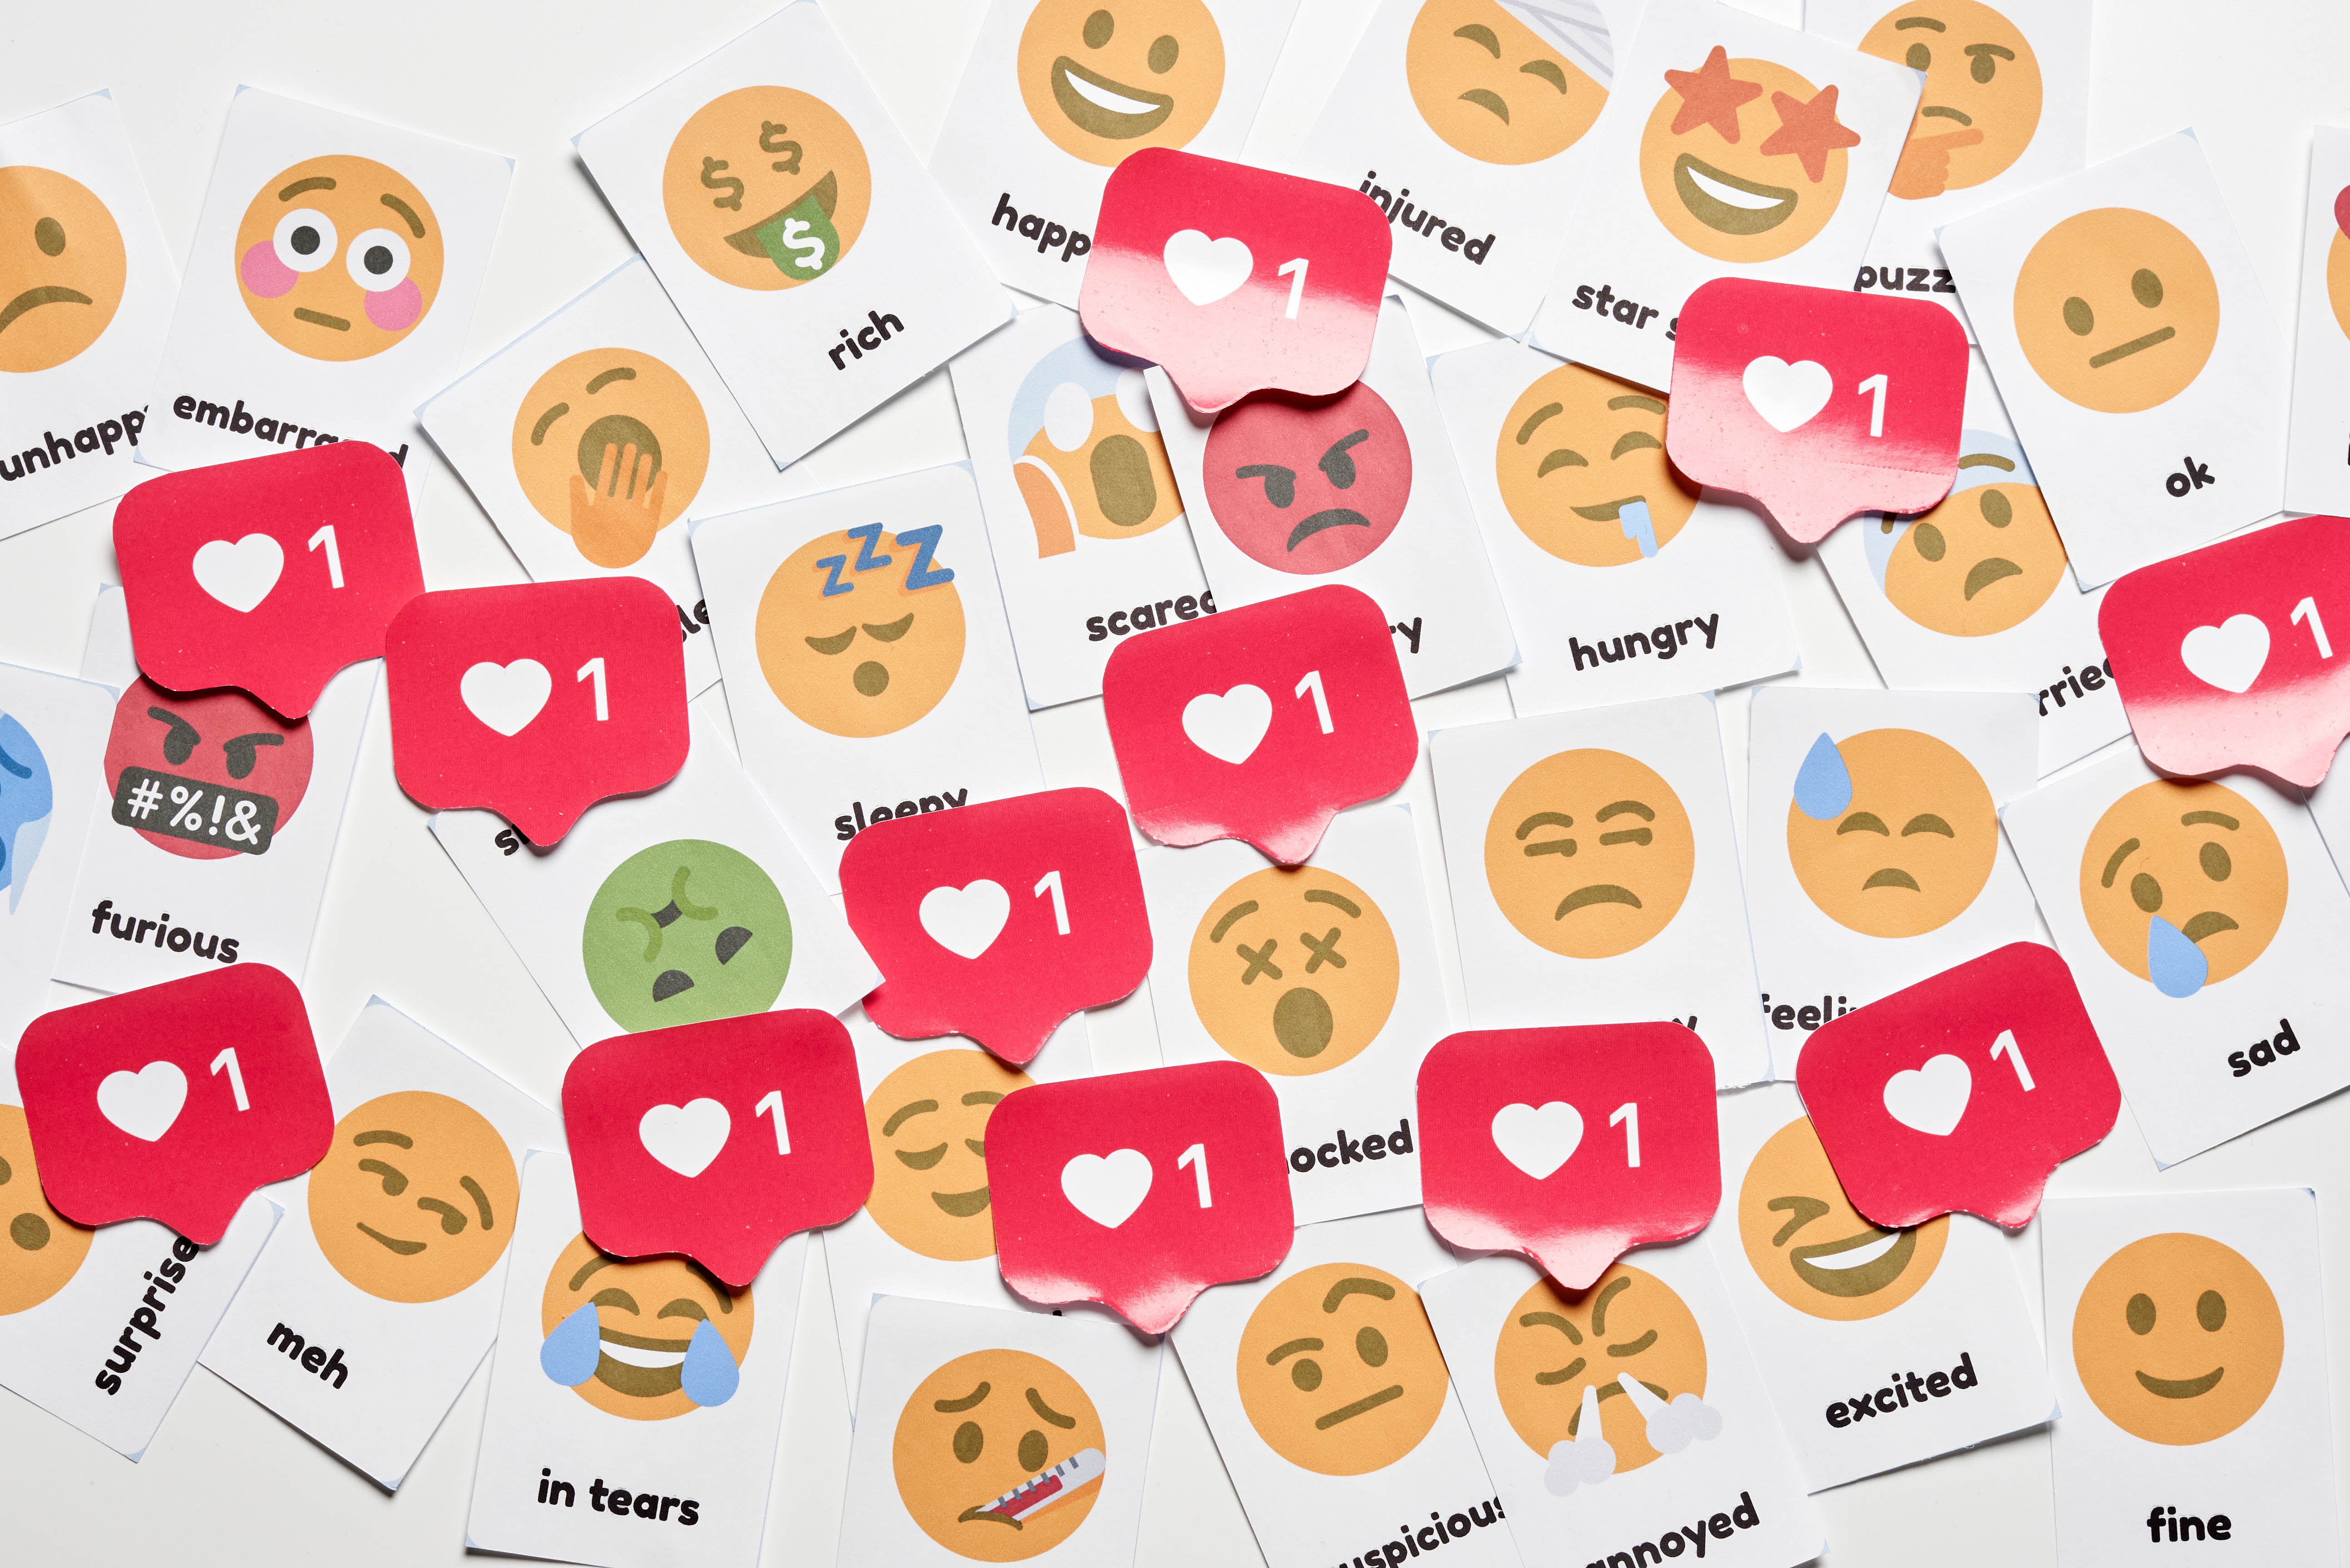 emoji, miscellaneous, emoticons, smileys, miscellanea, stickers, likes